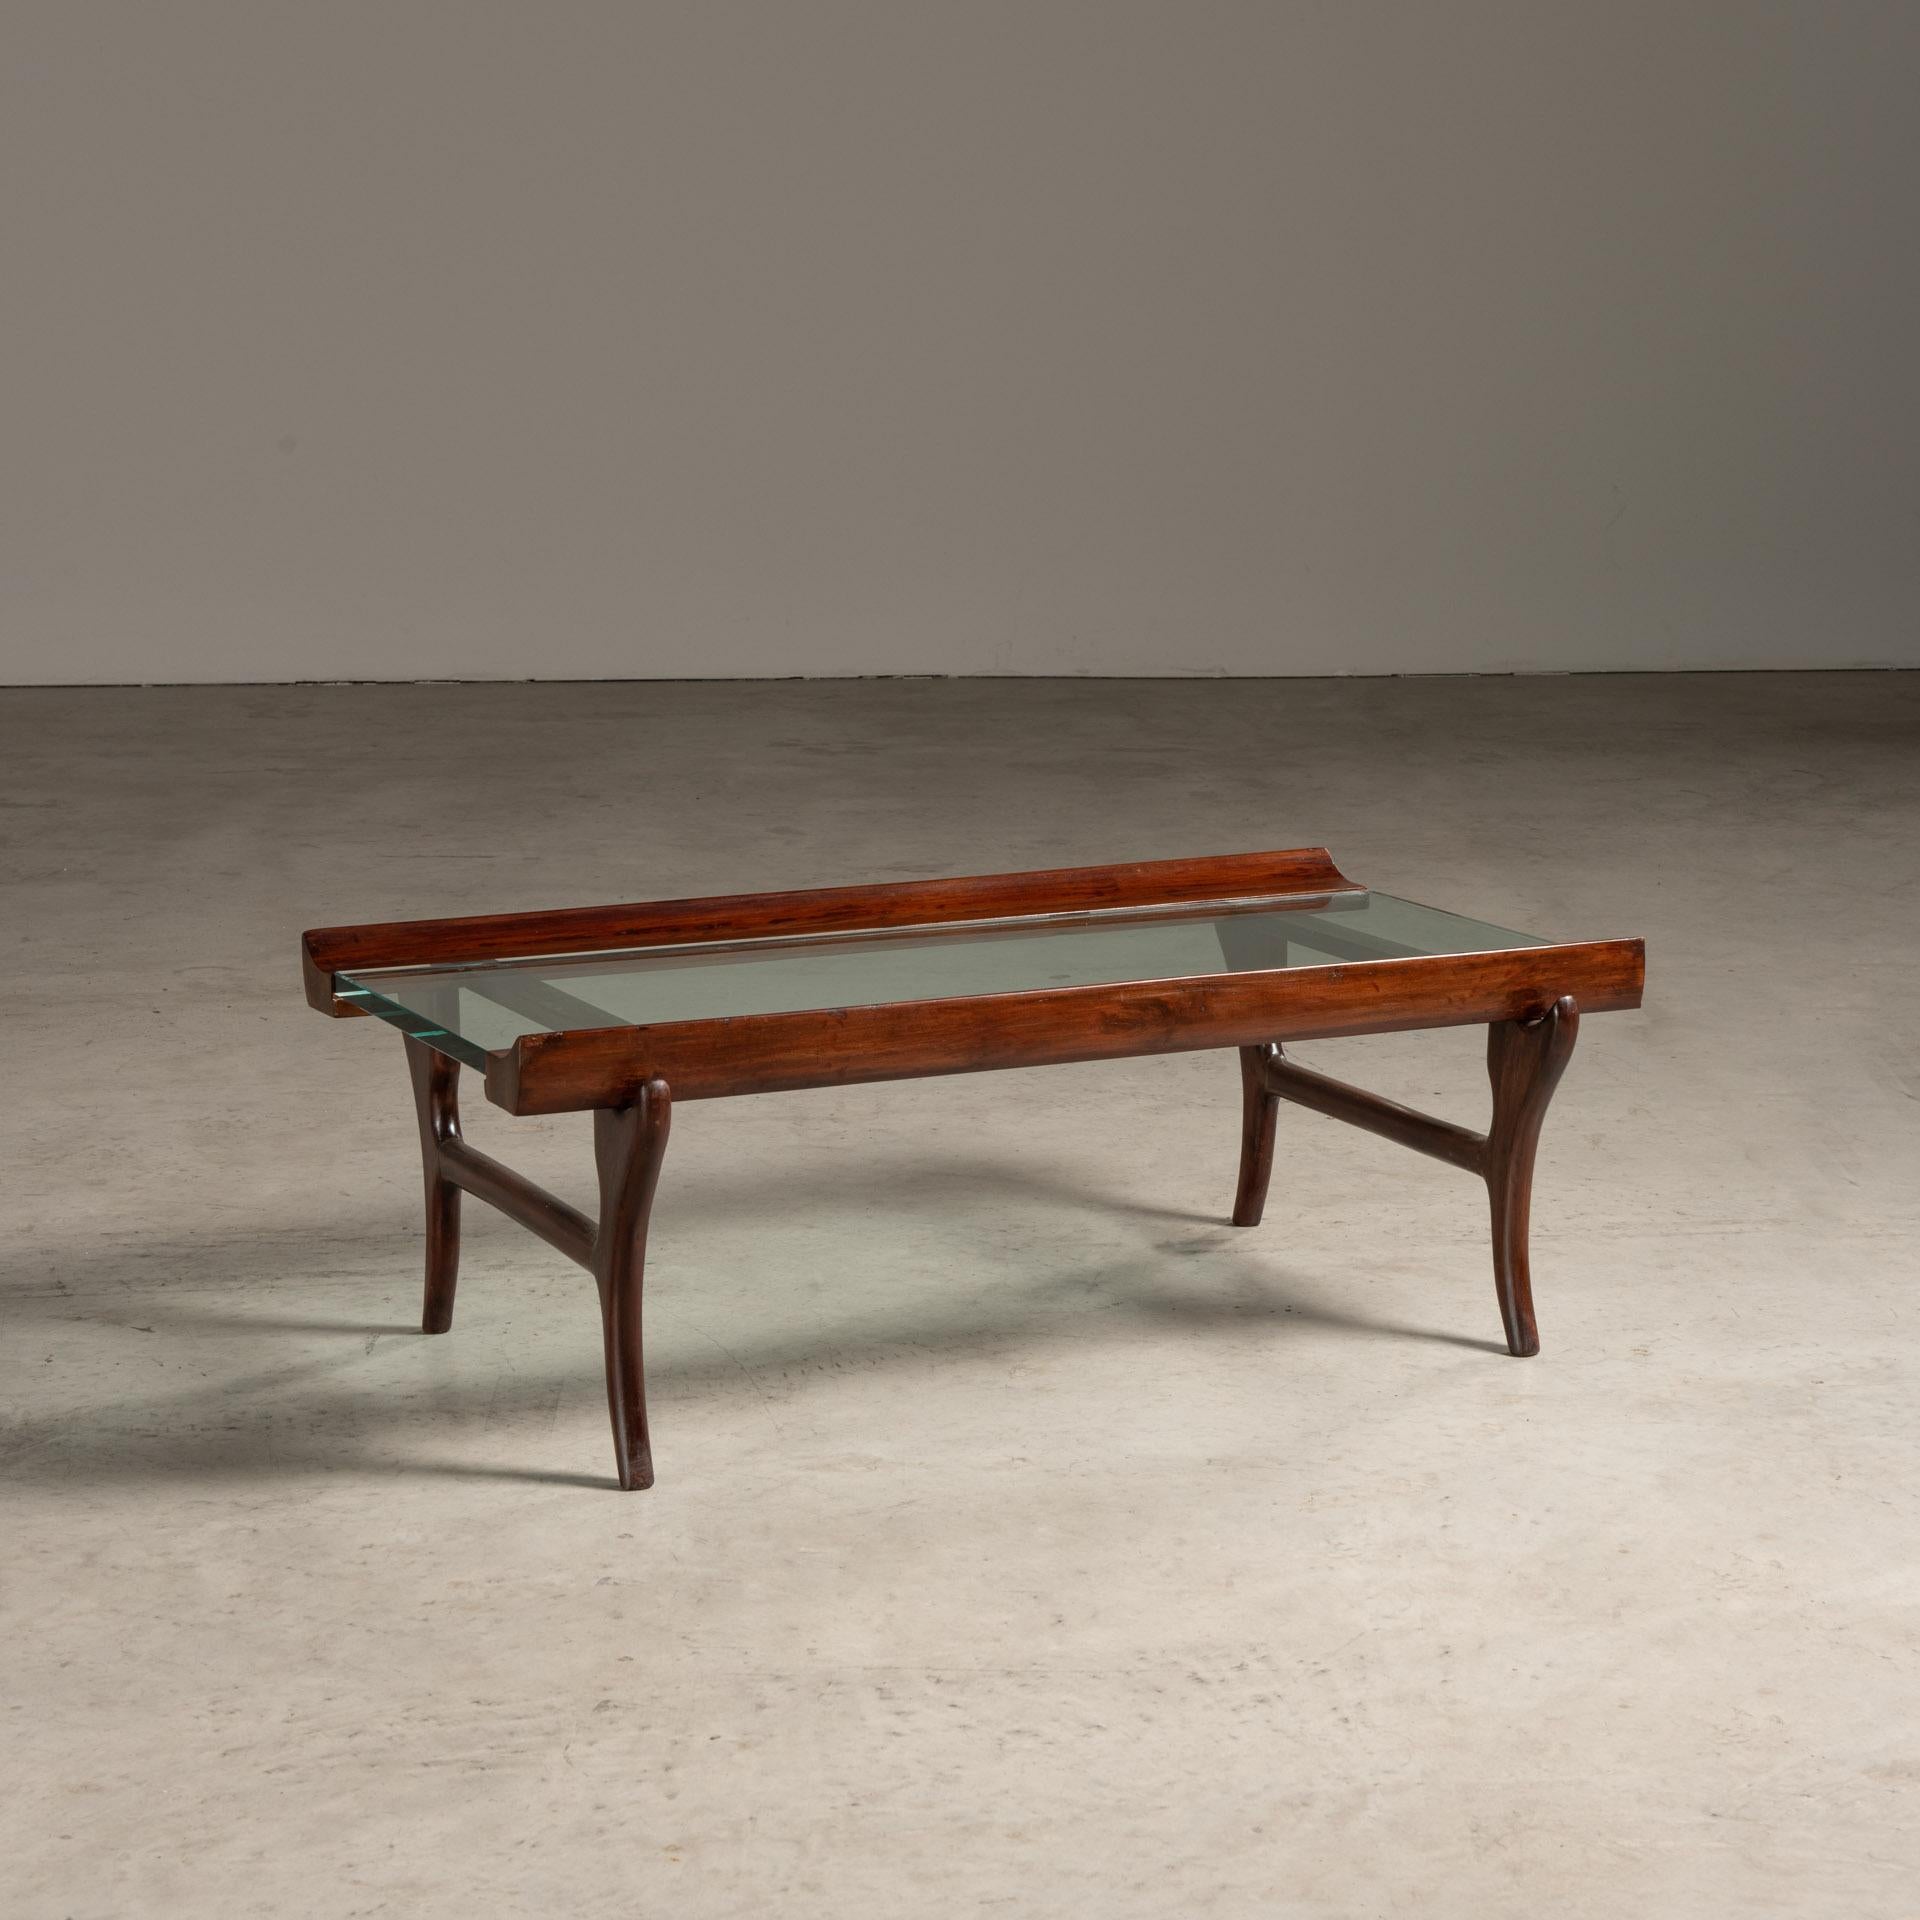 Der von Giuseppe Scapinelli entworfene Mitteltisch ist ein schönes Beispiel für brasilianische Möbel aus der Mitte des Jahrhunderts, die sowohl Eleganz als auch einen ausgeprägten Sinn für Handwerkskunst widerspiegeln. Der Tisch zeichnet sich durch